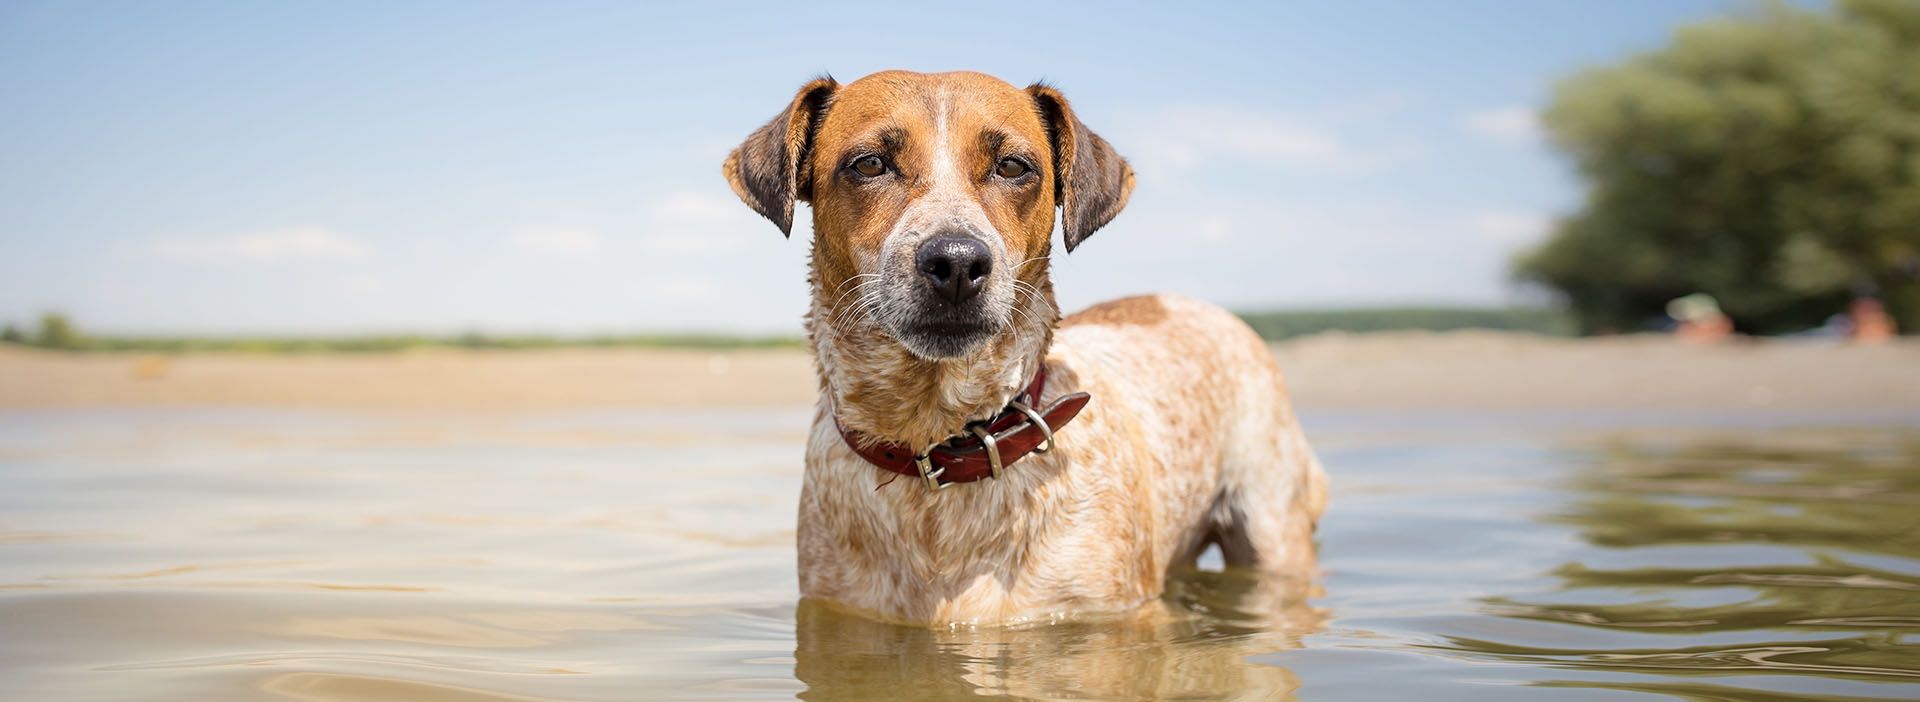 Hund steht im See